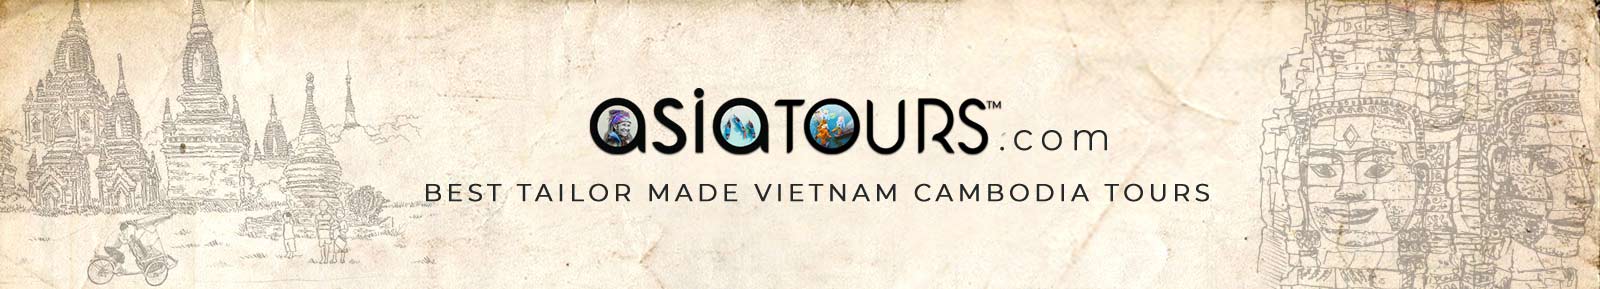 Vietnam Cambodia Tours